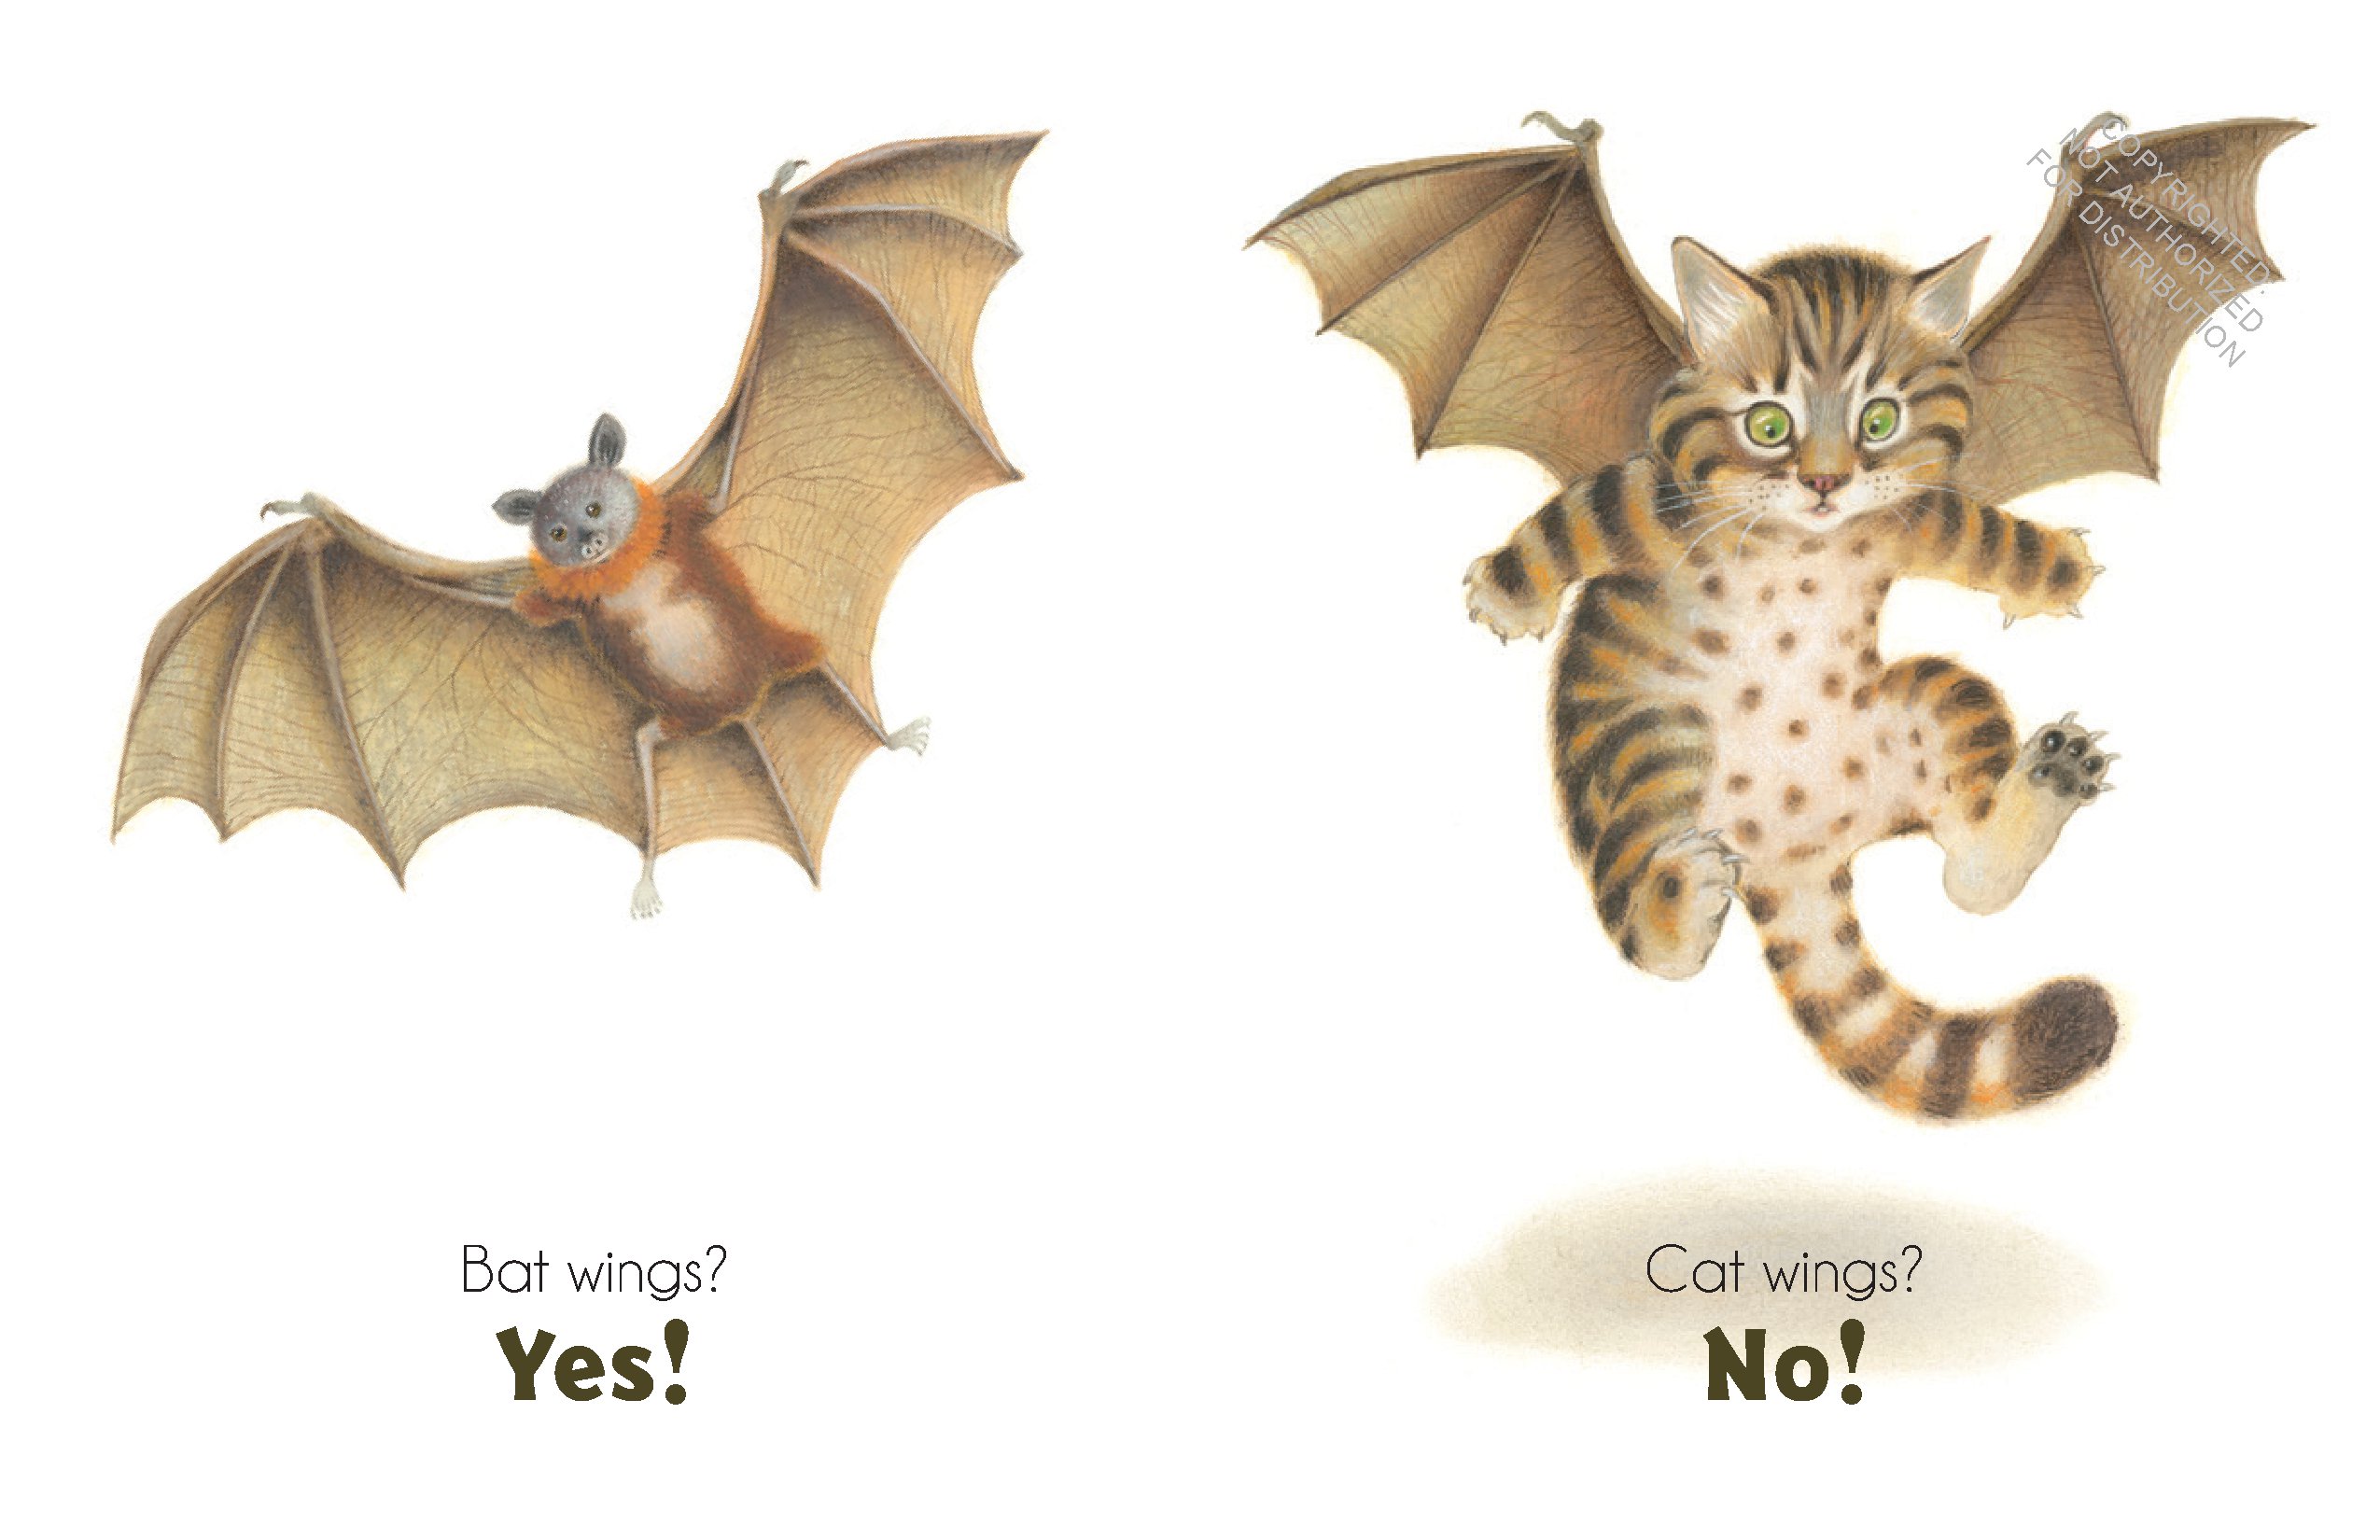 Bat Wings! Cat Wings?